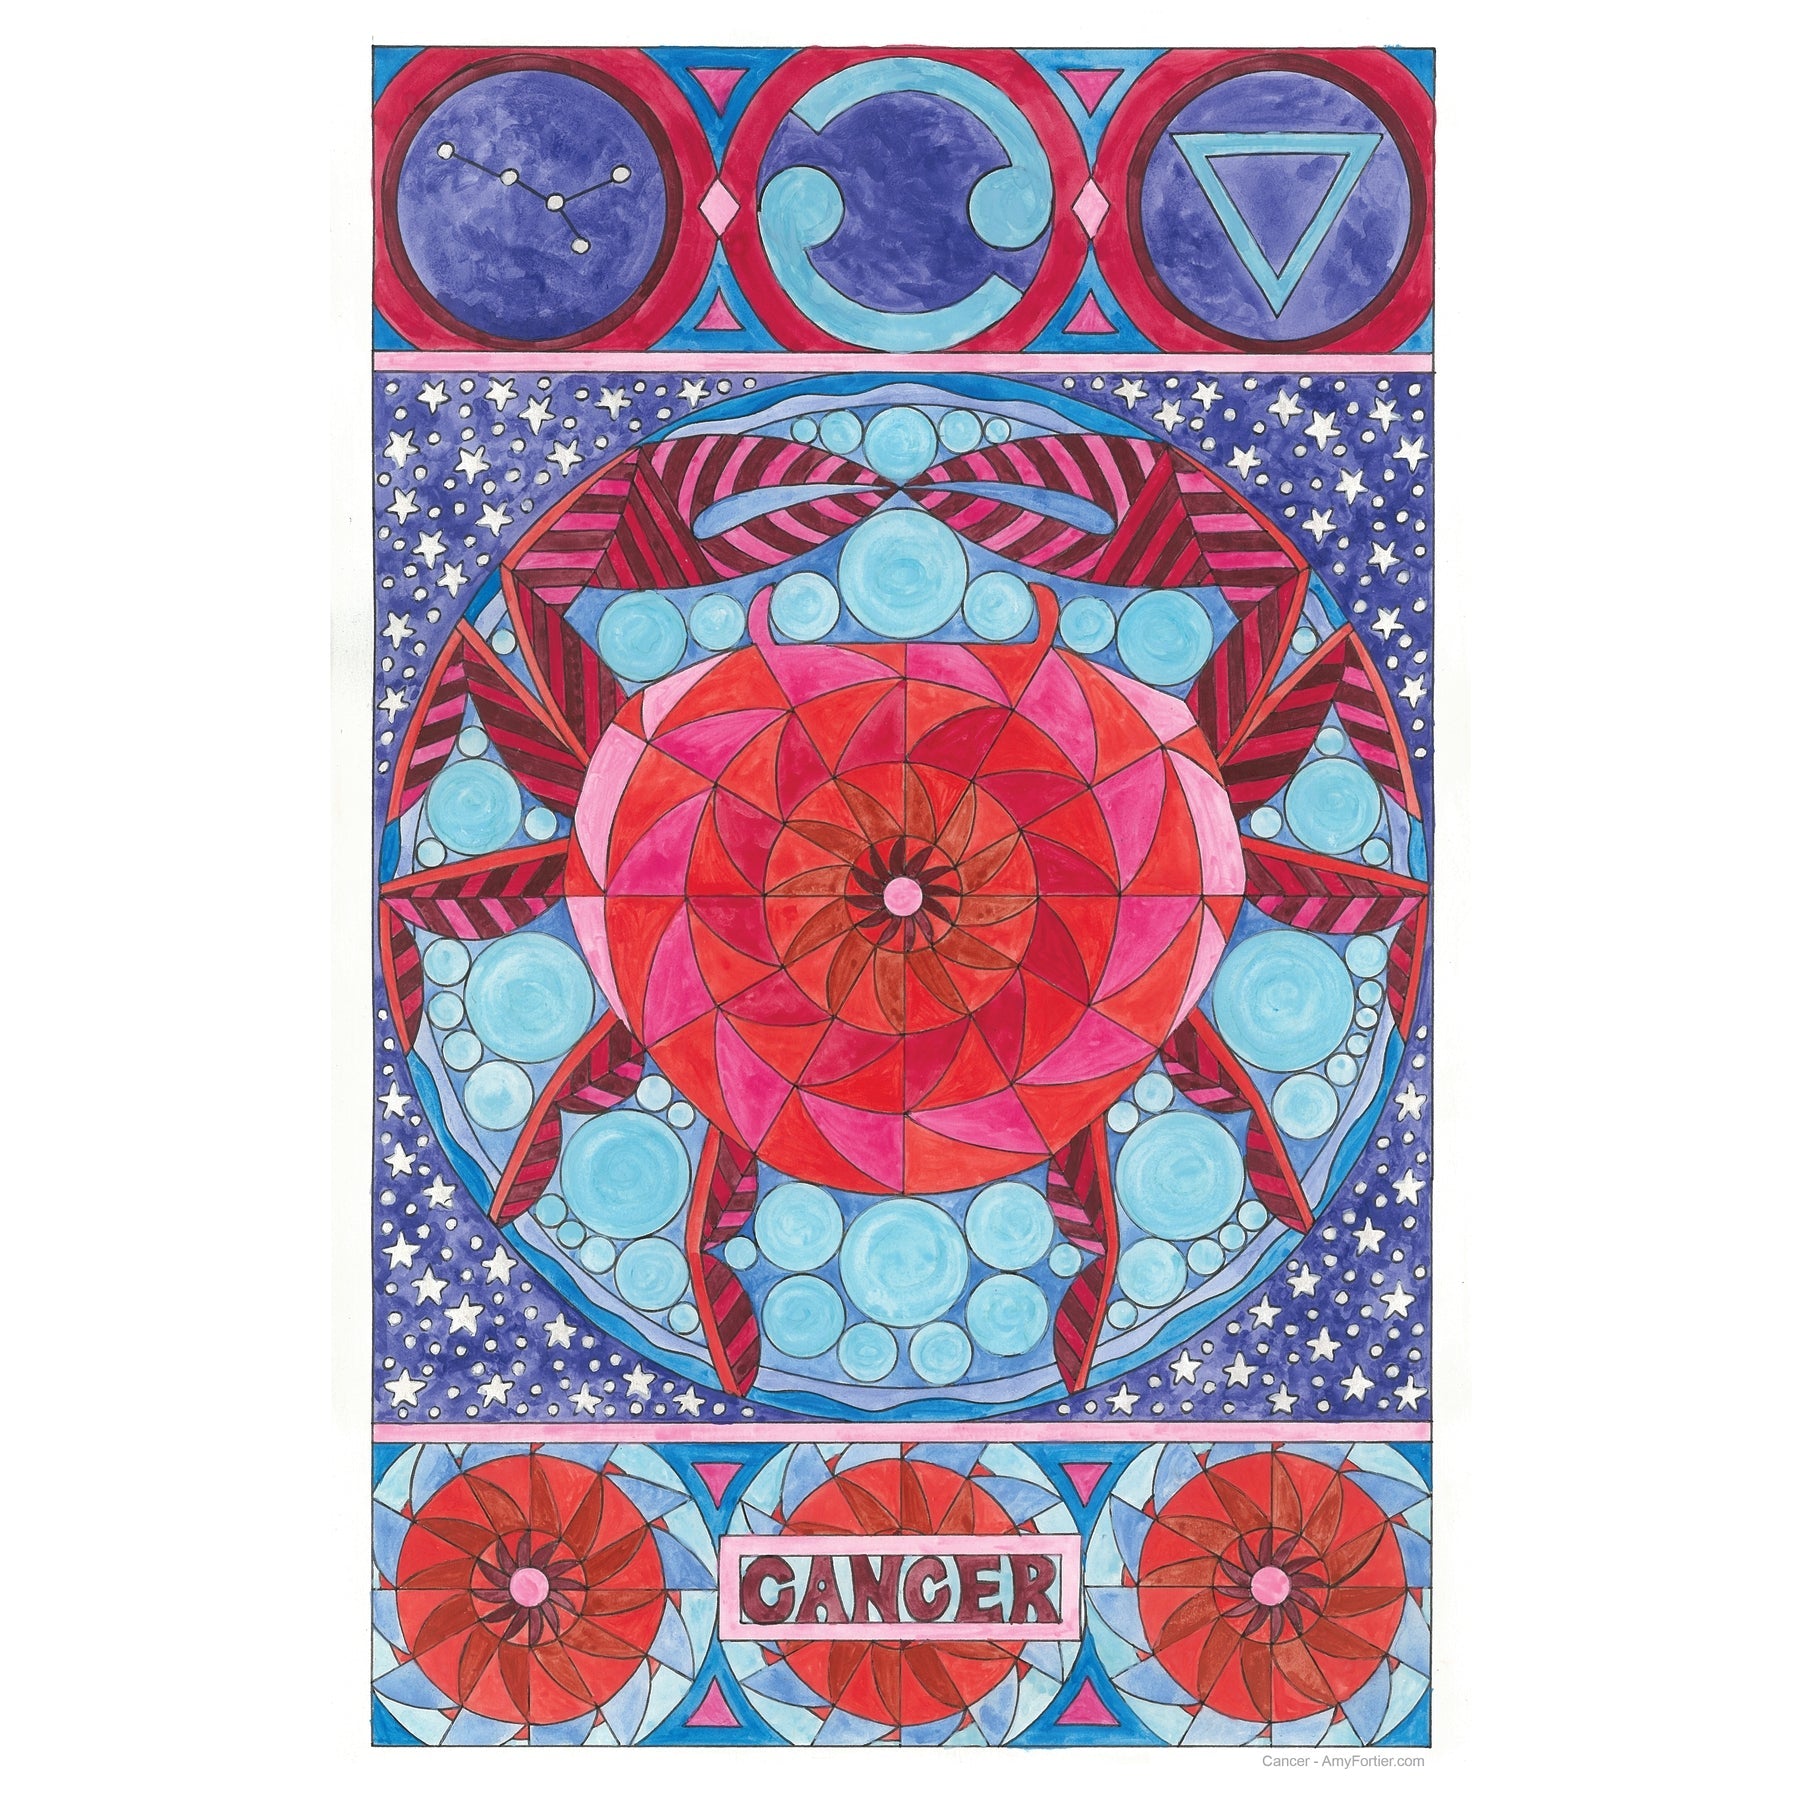 Cancer, rug hooking pattern